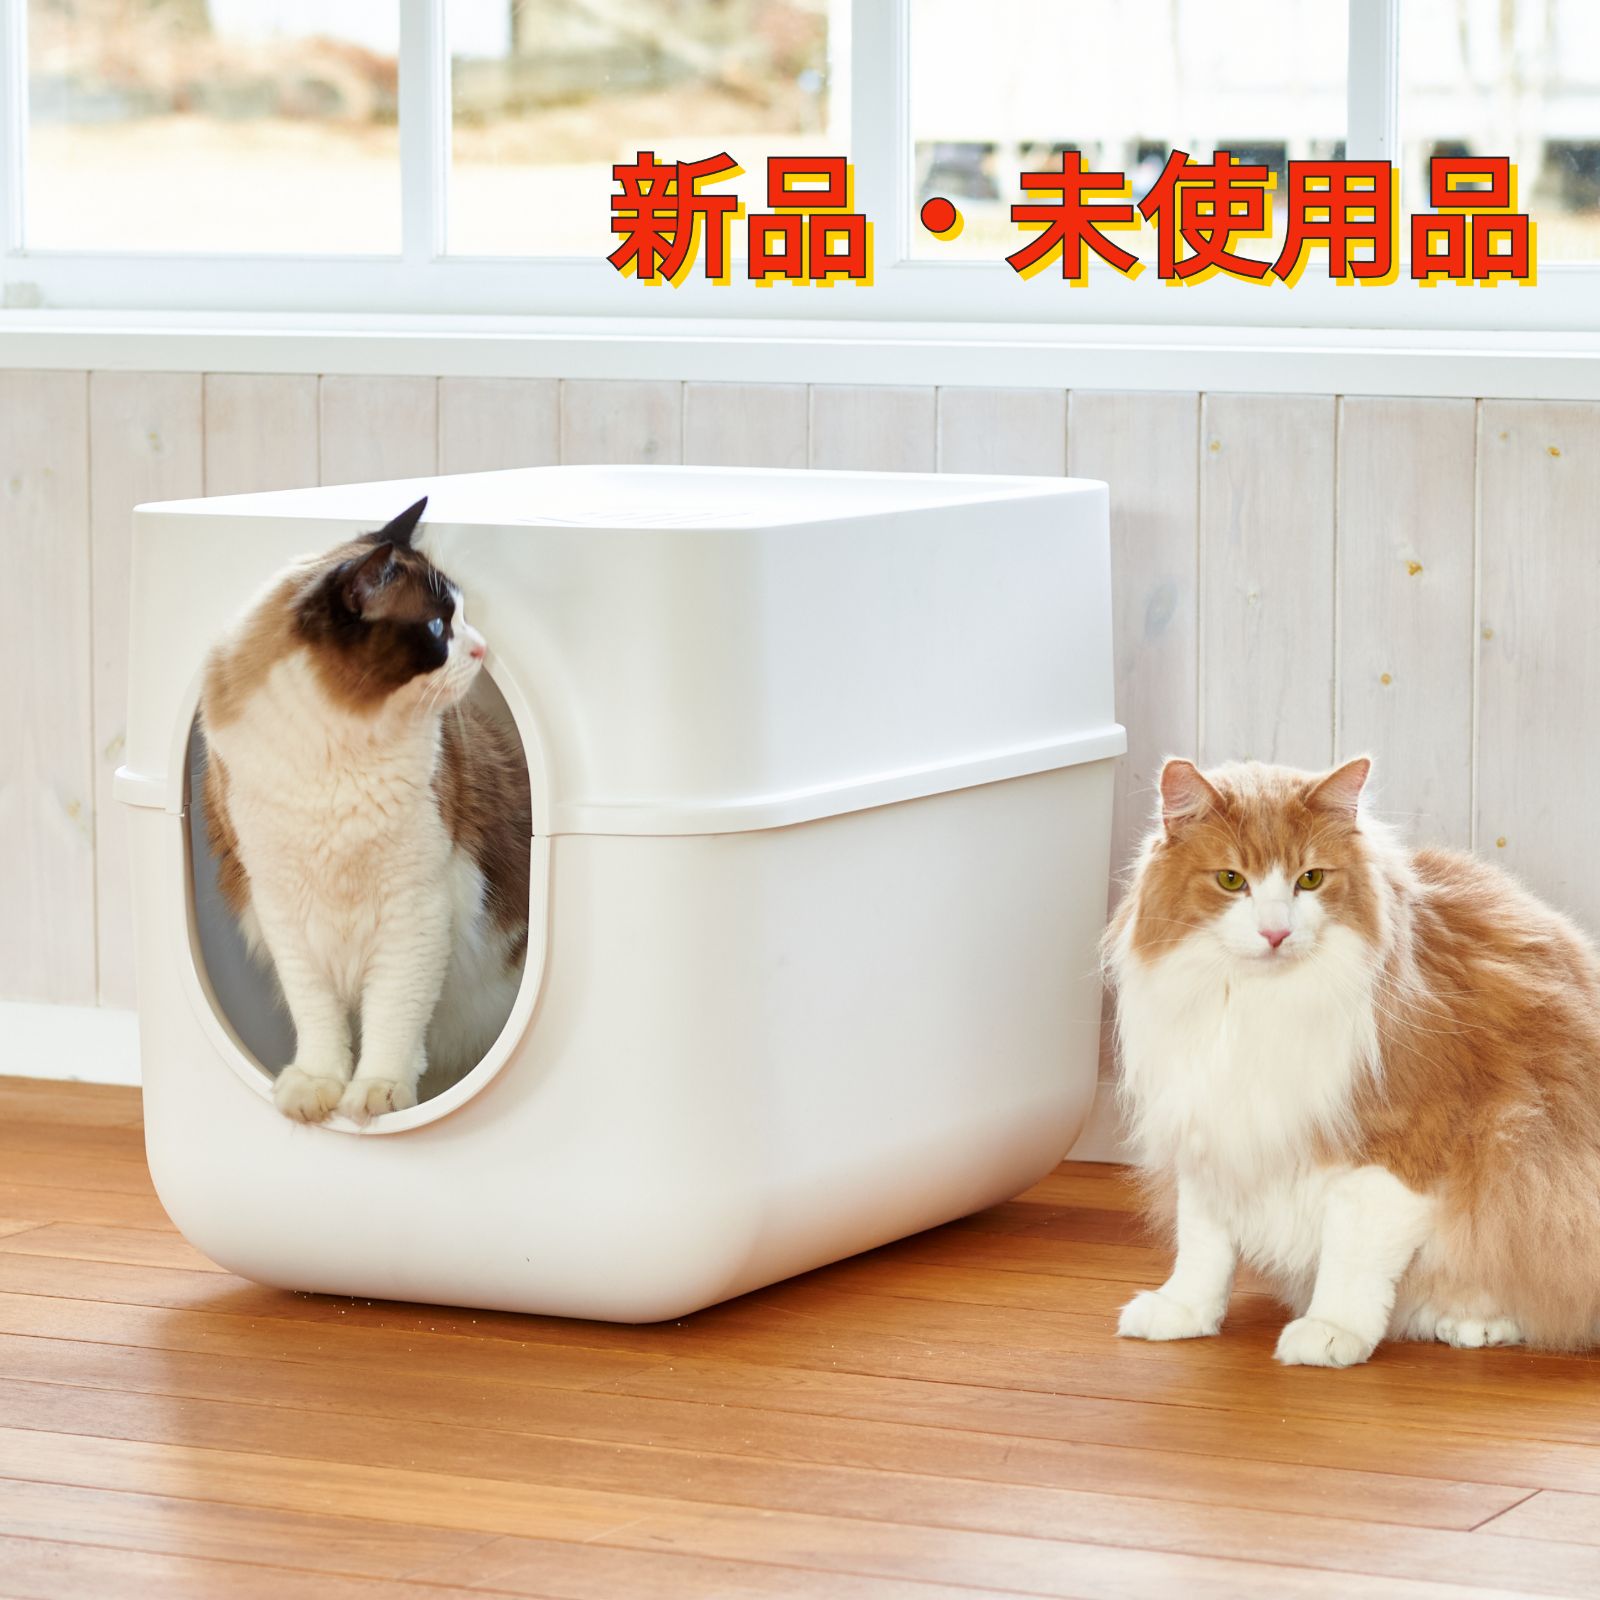 クリスマス 猫 トイレ システム スライド式 大型 おしゃれ メガトレー